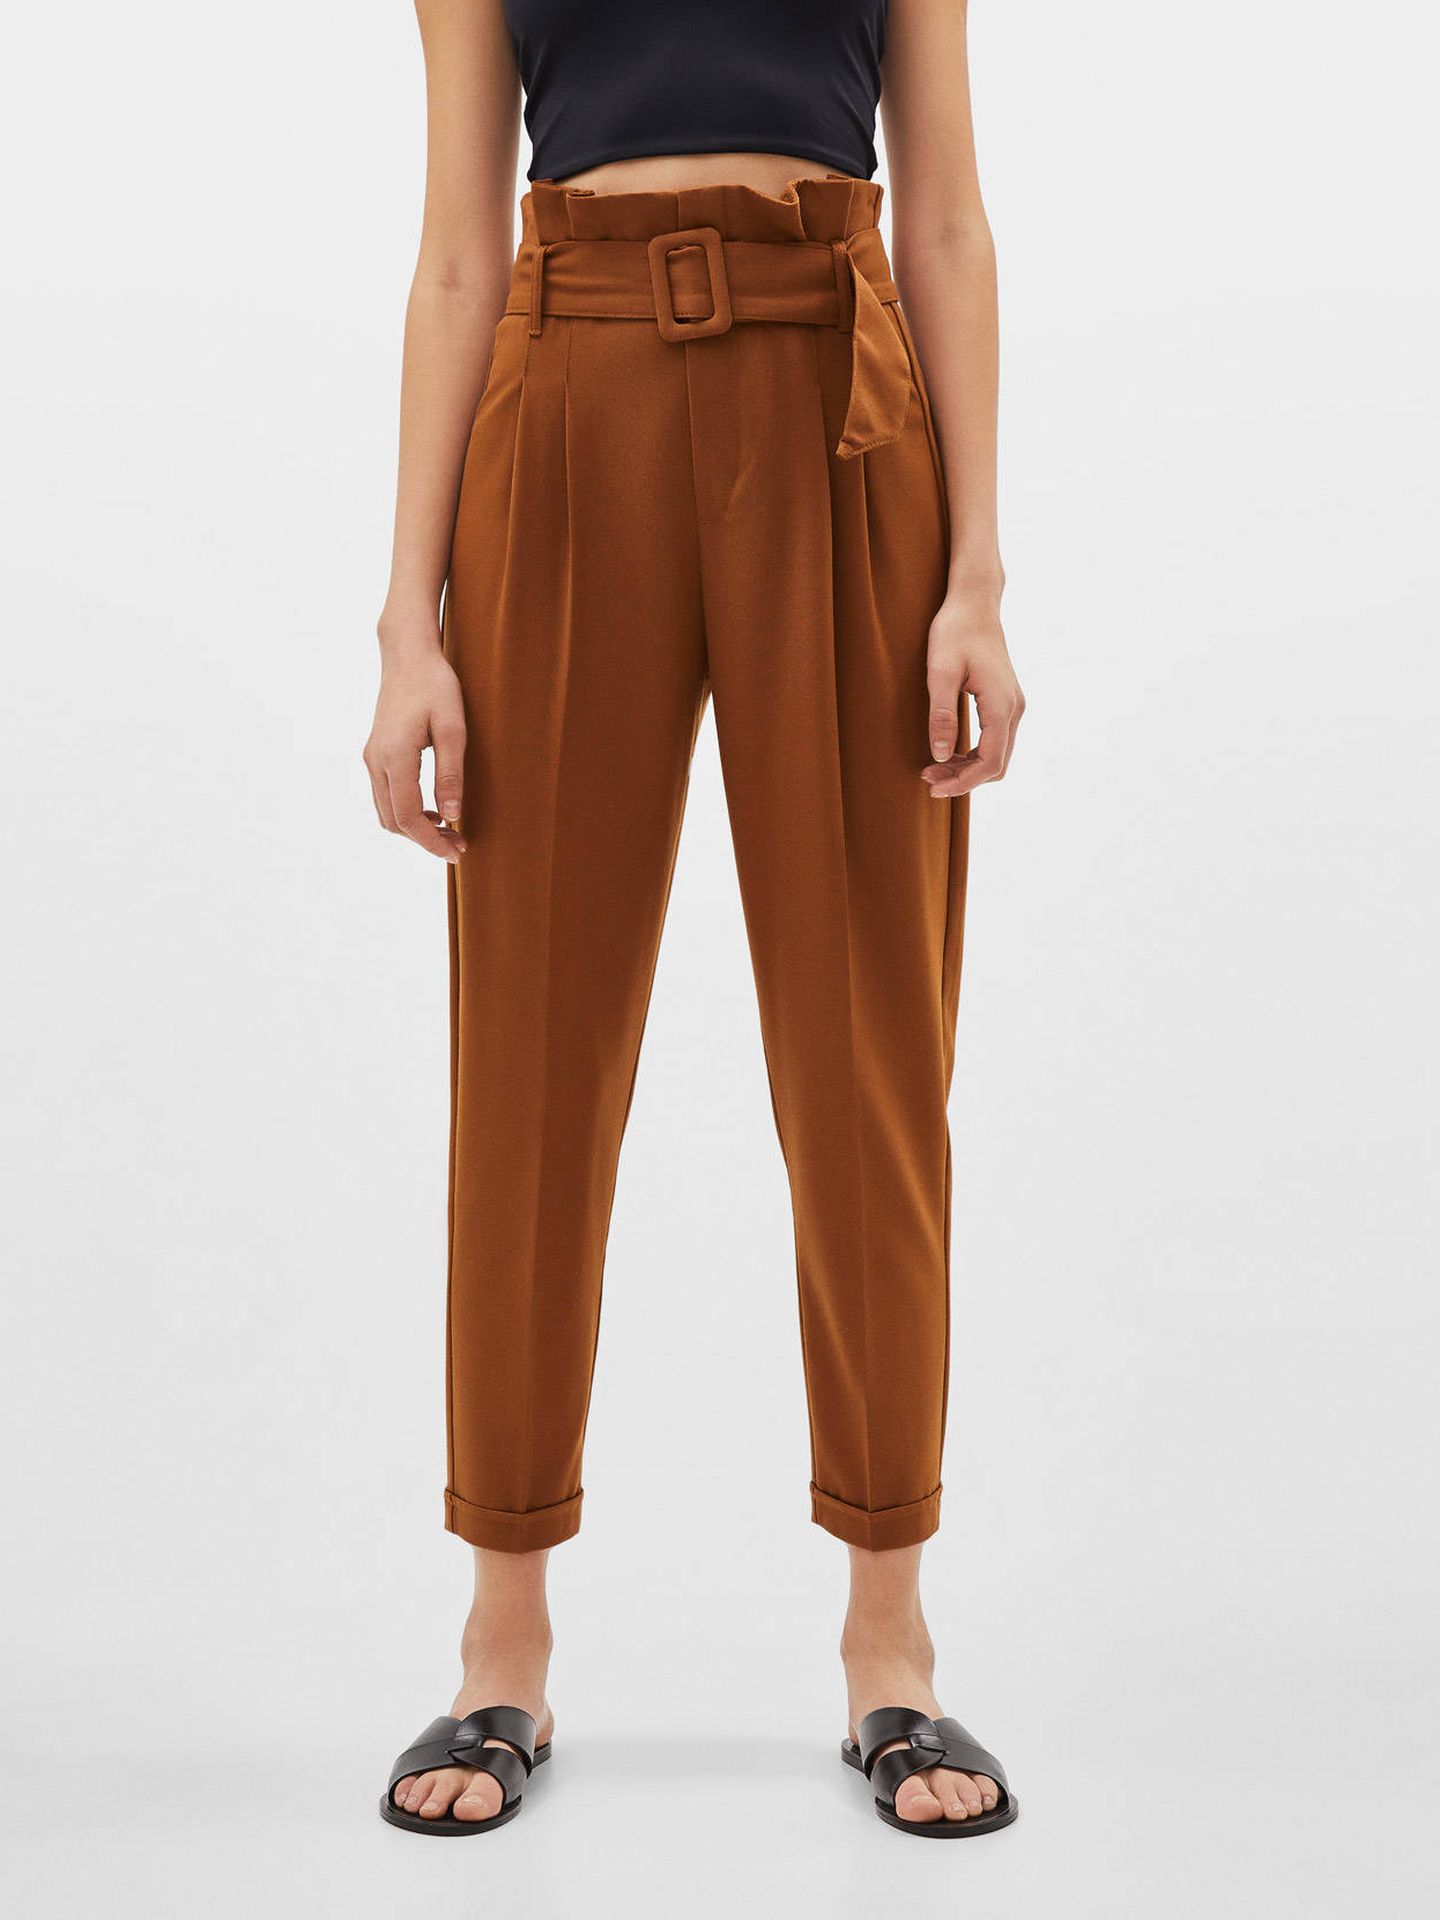 Pantalones de Zara similares a los de Rocío Osorno. (Cortesía)